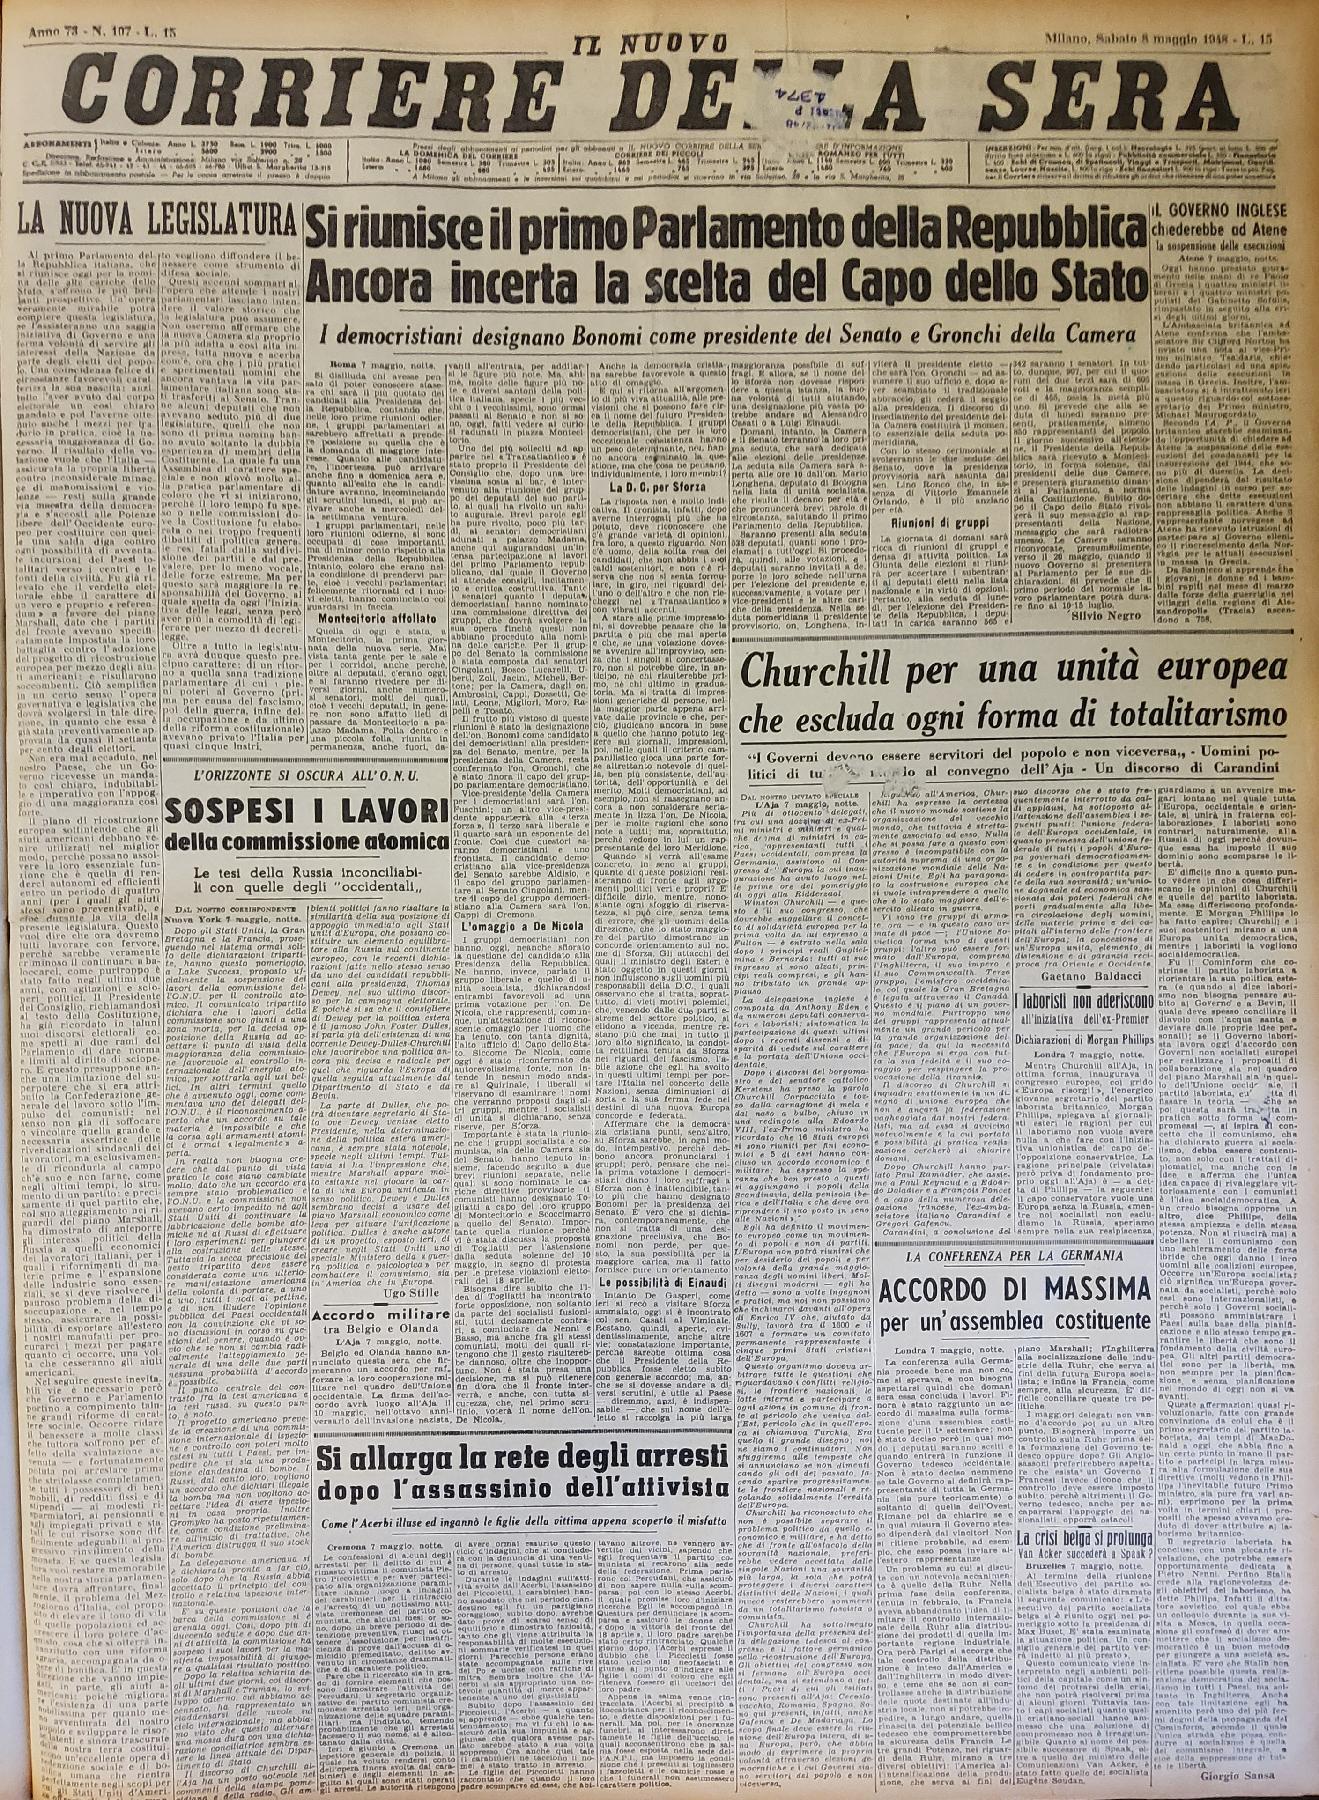 8 maggio 1948 - Prima pagina del quotidiano "Corriere della Sera".